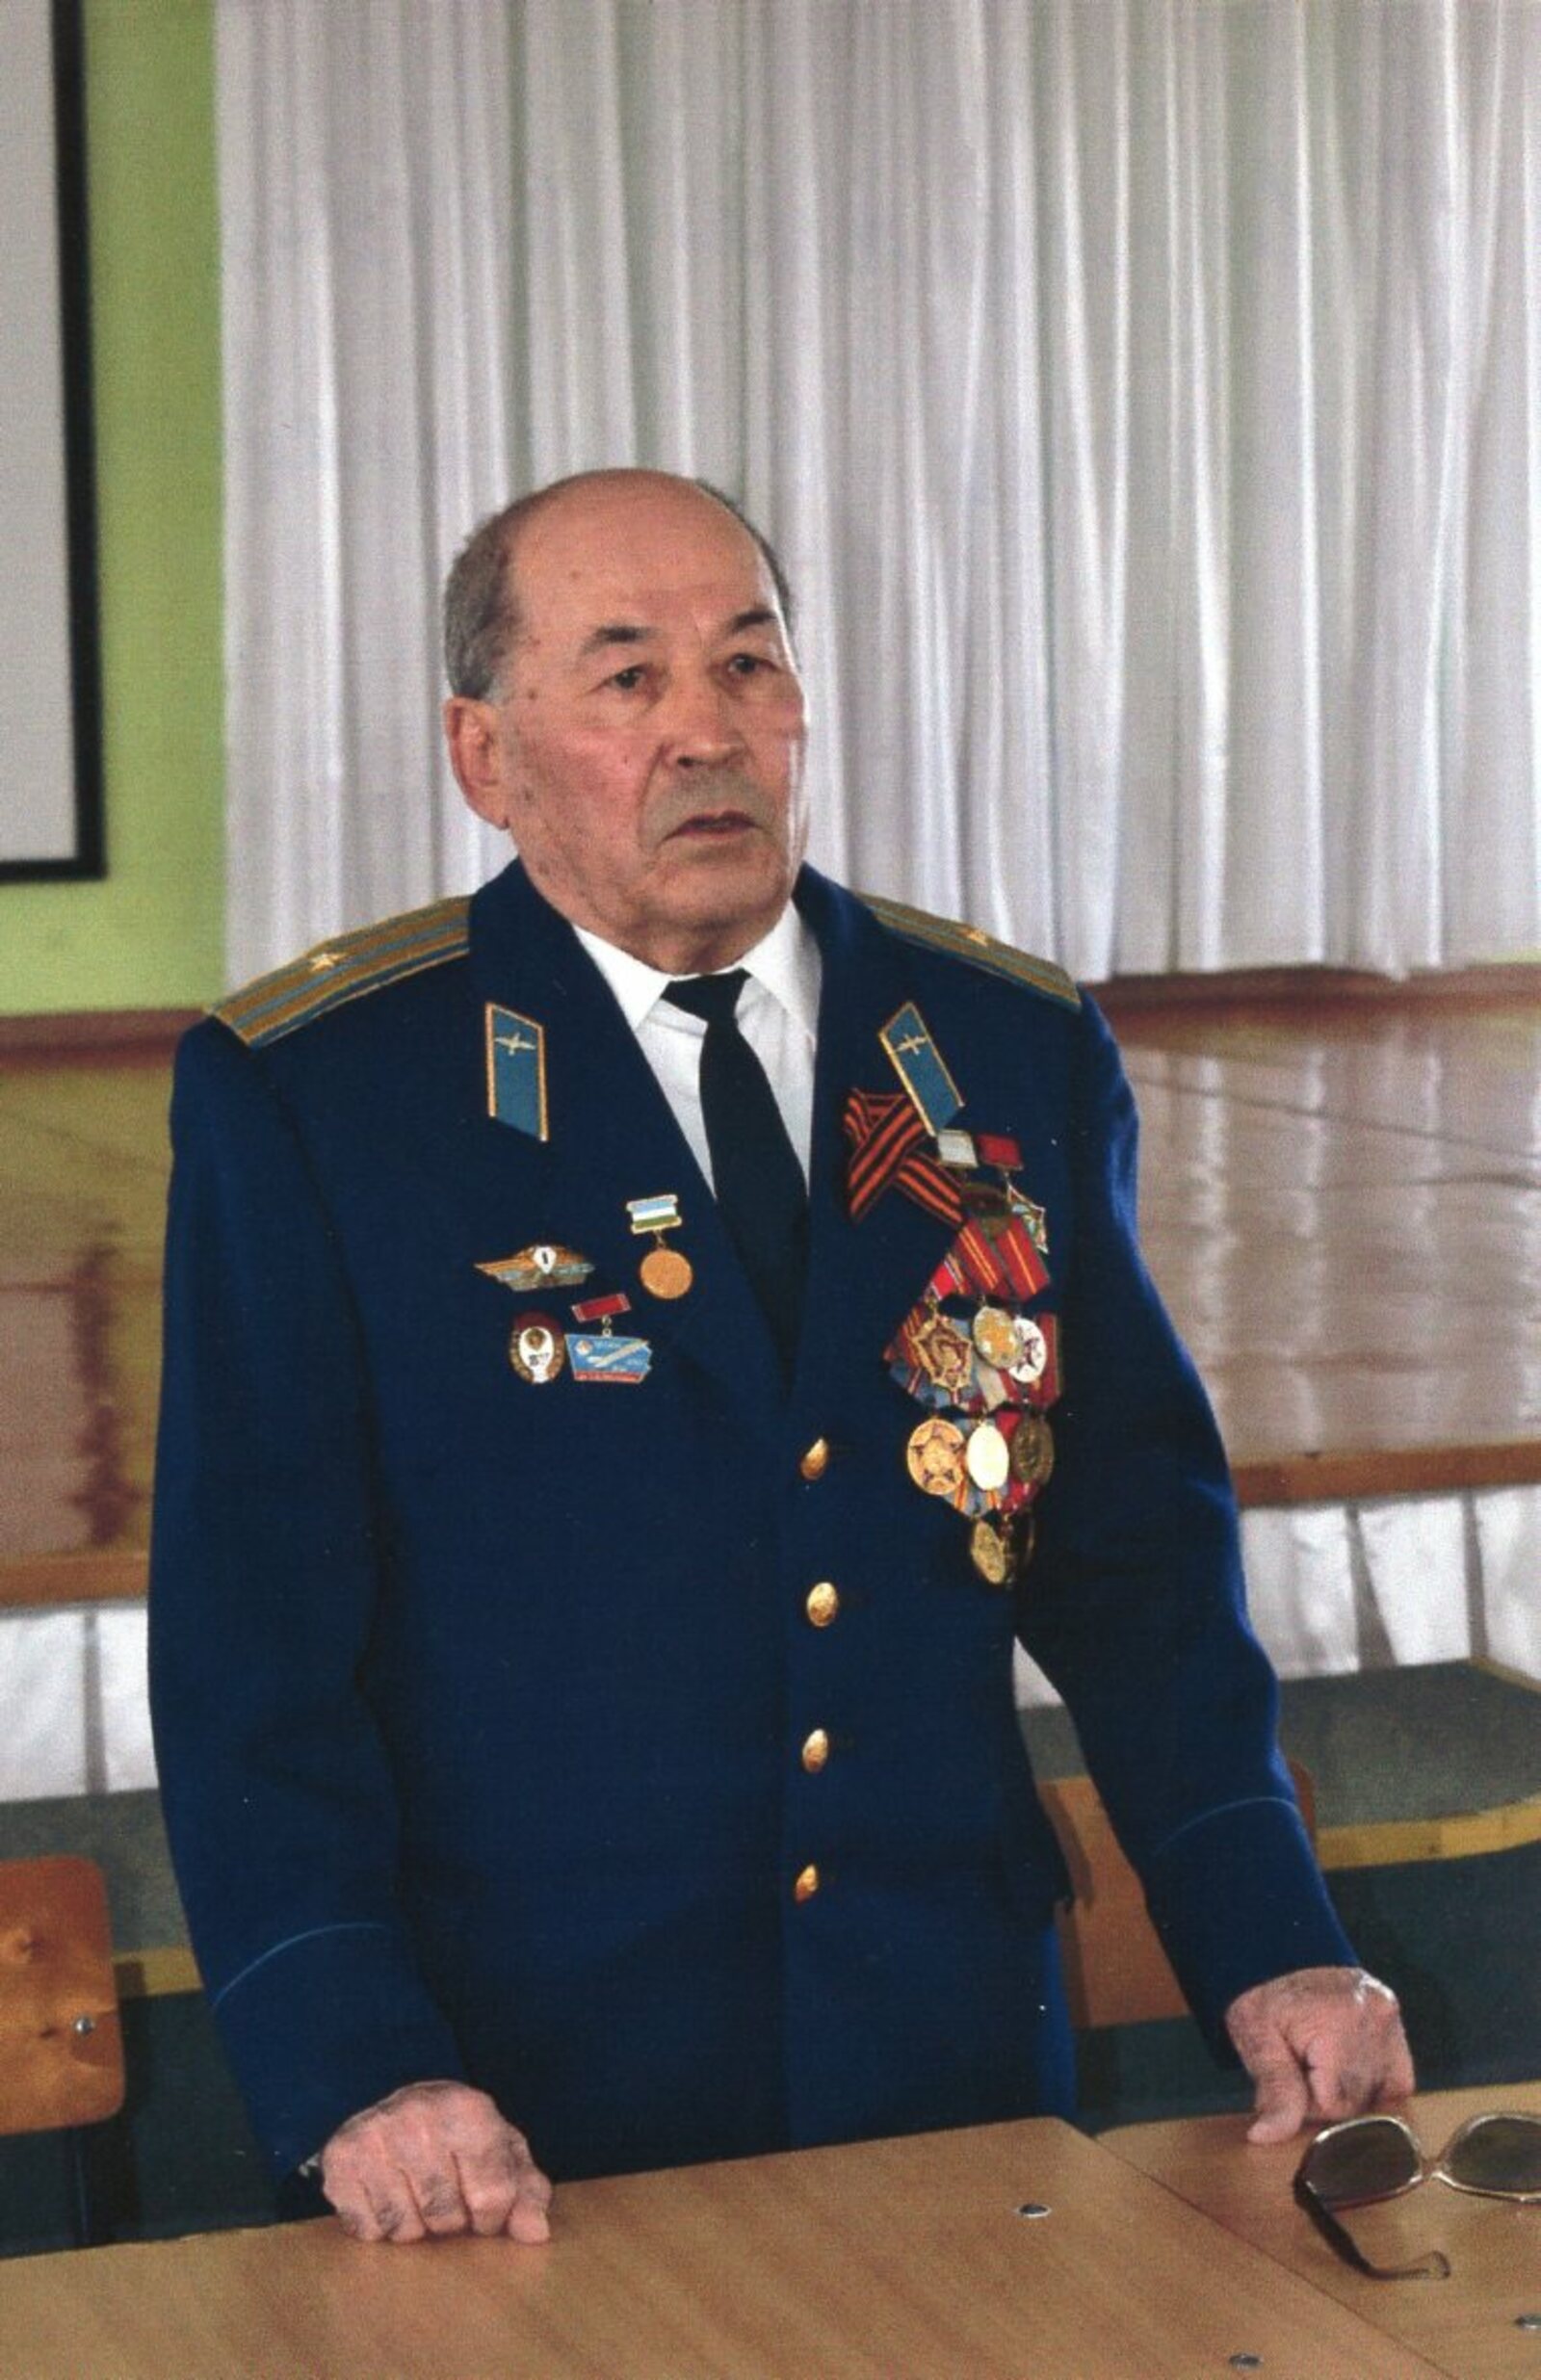 Педагогическая деятельность Галимьяна Валиева стала логическим продолжением военной карьеры